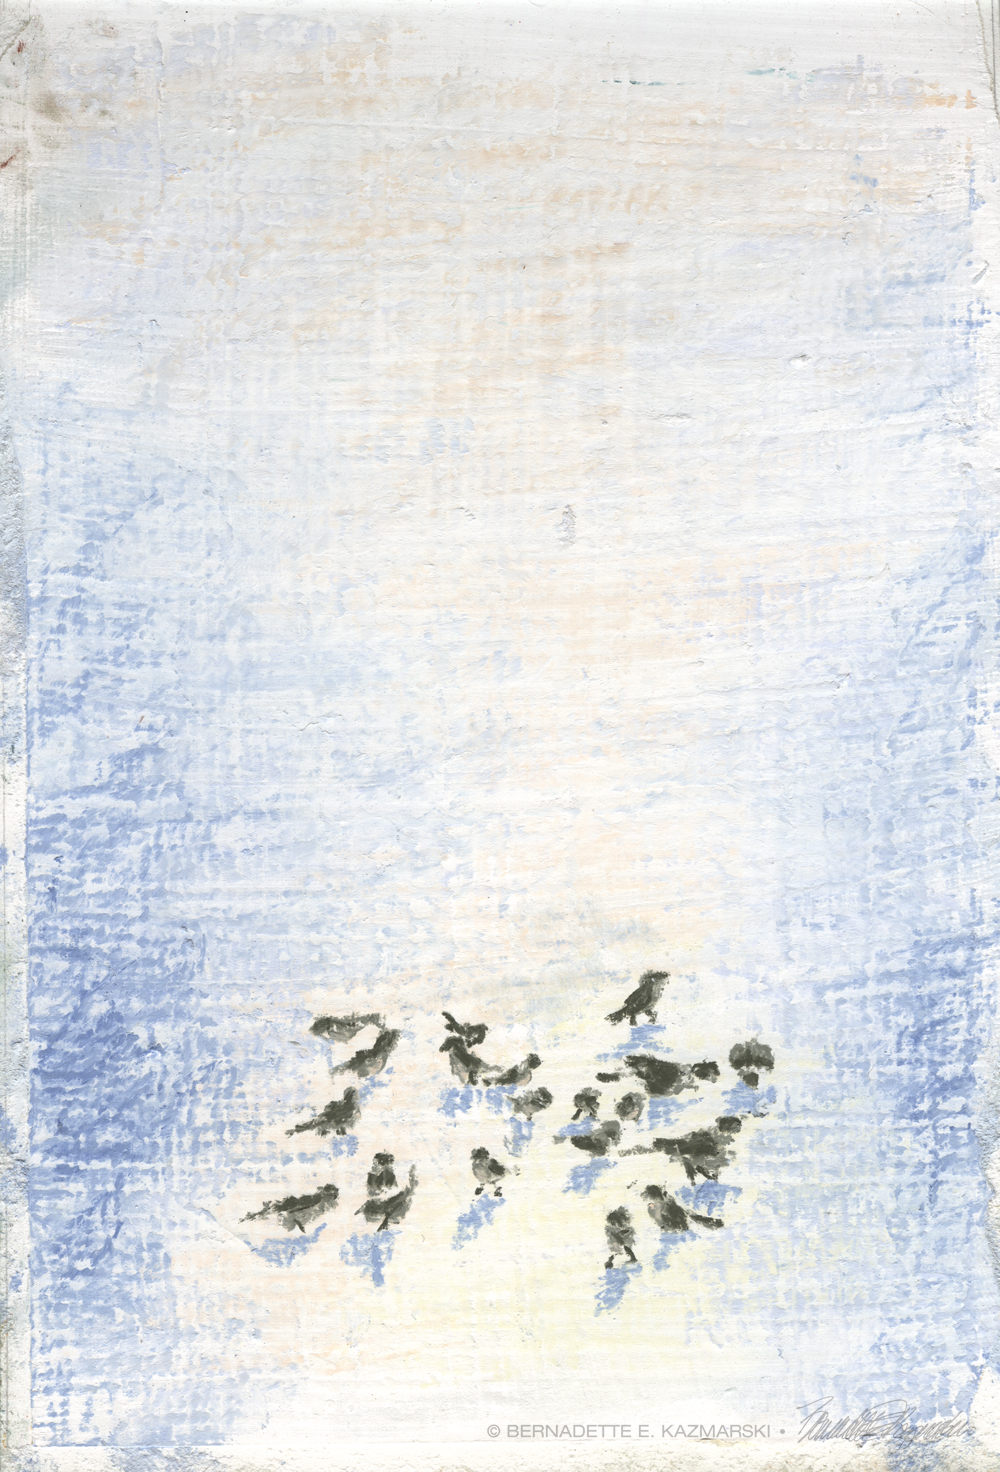 "Birds in Snow", 9 x 12 pastel sketch.